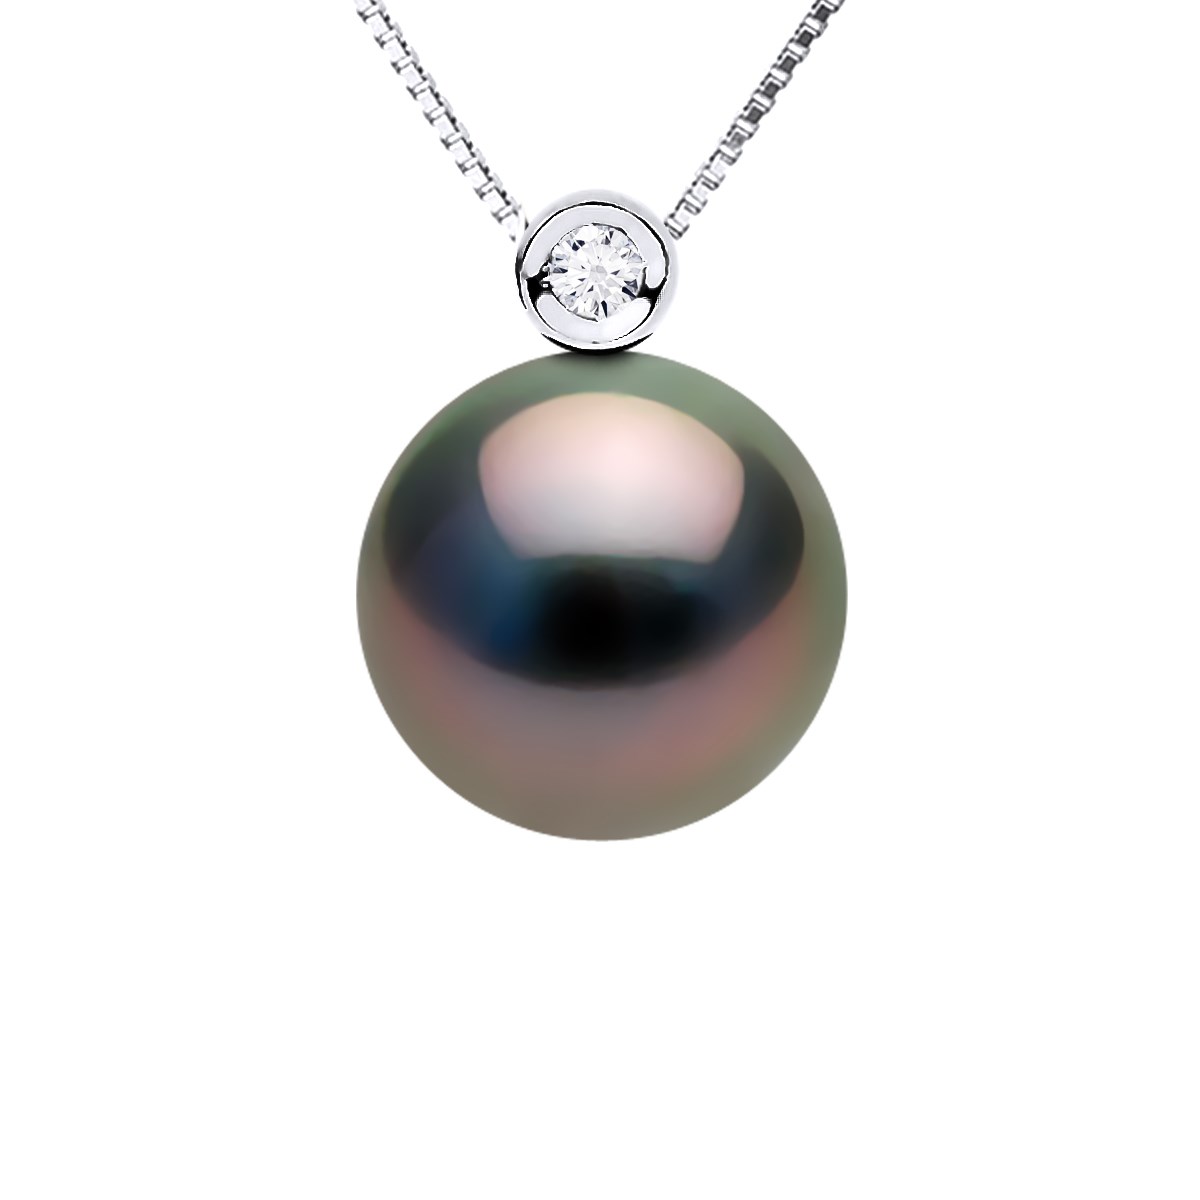 Collier JOAILLERIE PRESTIGE Diamant 0.03 Cts - Véritable Perle de Culture de Tahiti Ronde 10-11 mm - Or Blanc 750 Millièmes (18 Cts)